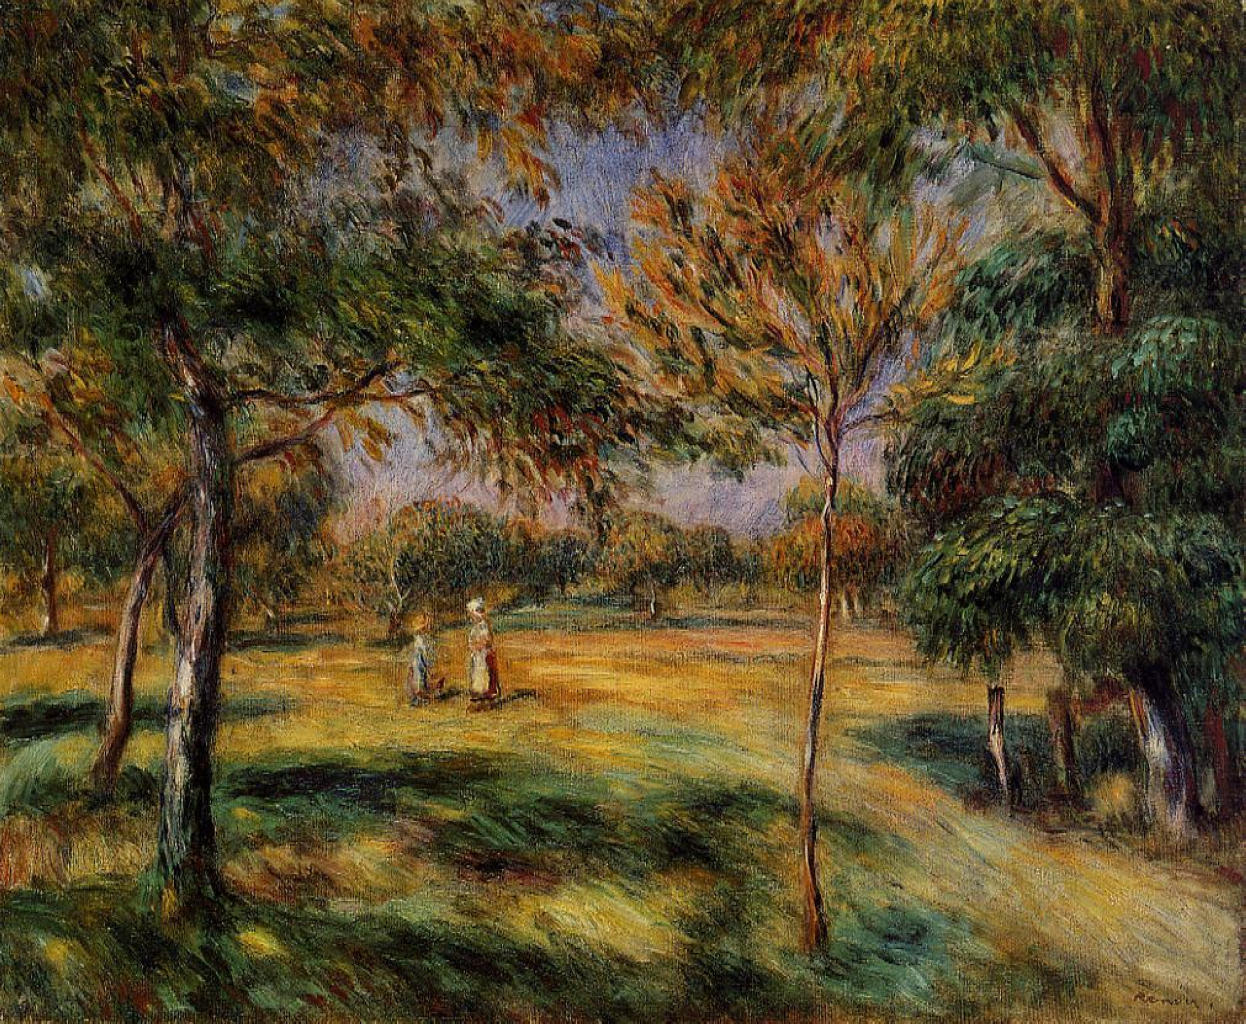 Pierre+Auguste+Renoir-1841-1-19 (474).jpg